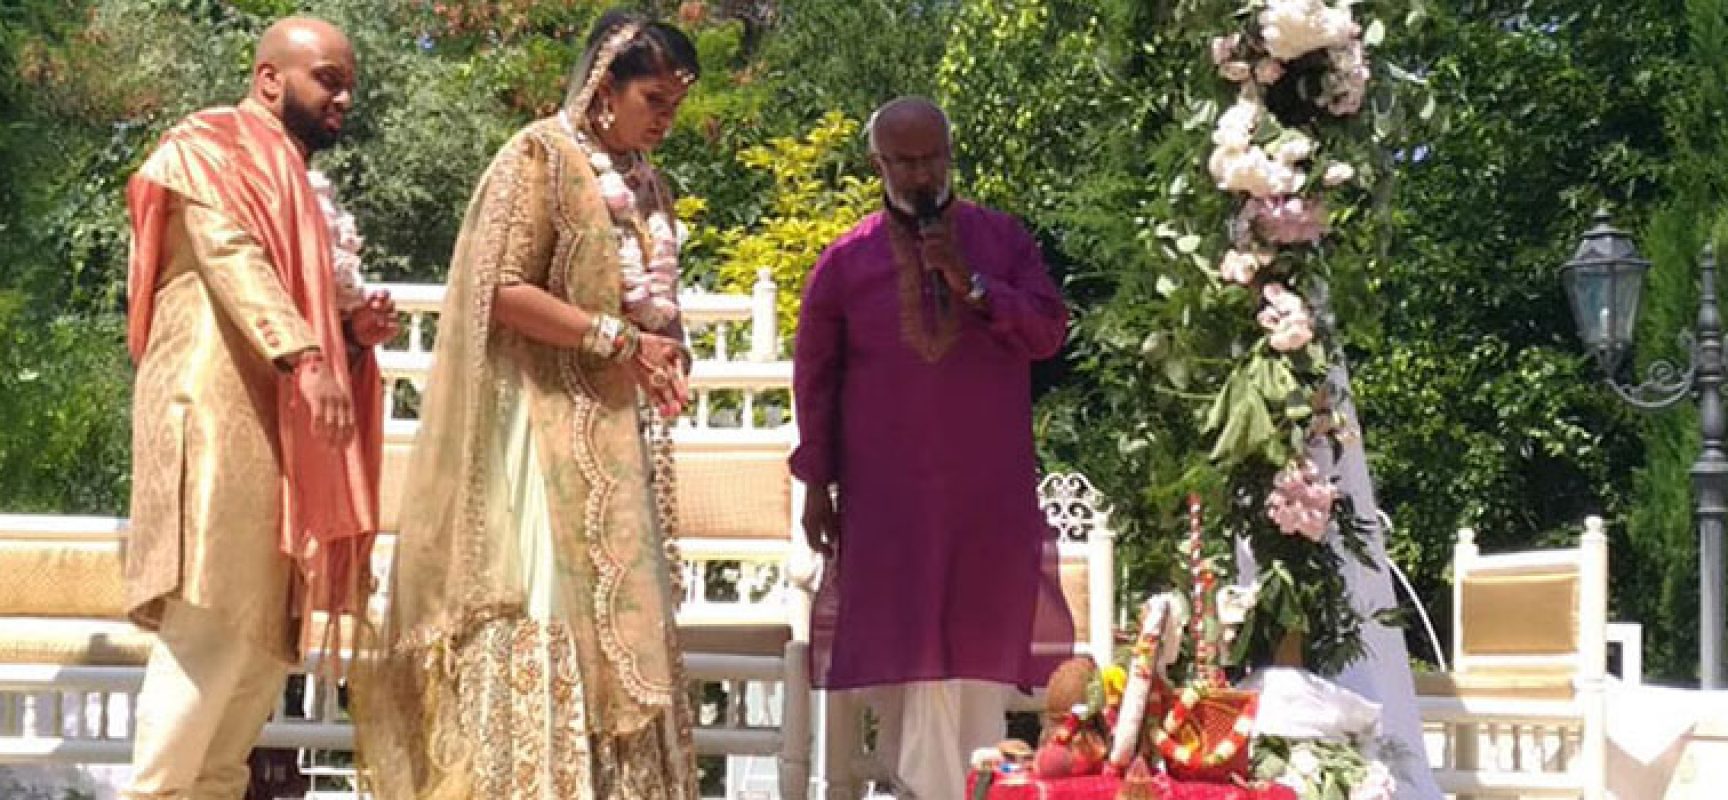 Colori, tradizioni e riti. Bisceglie location di un matrimonio indiano